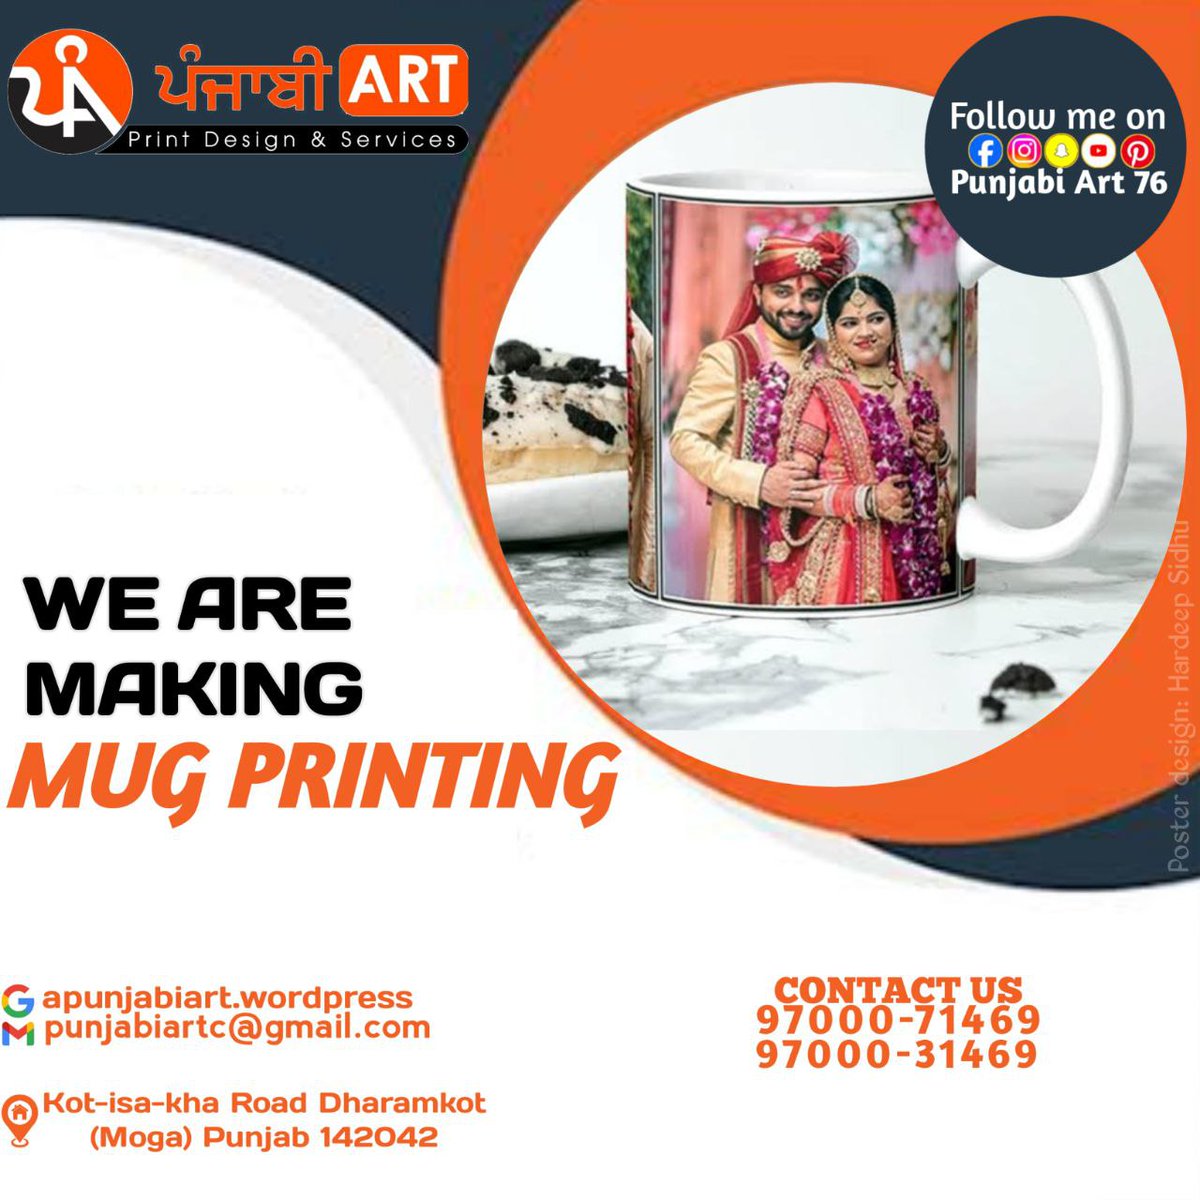 We Are Making  Mug Contact Us
.
.
.
Punjabi Art #punjabiart #punjabi #art #designs #deginer #graphicdesign #mug #magicmug #pillow #pillowprinting #graphicdesign #challenge #myselfsidhu76 #graphicdesigns #instagram @myselfsidhu76